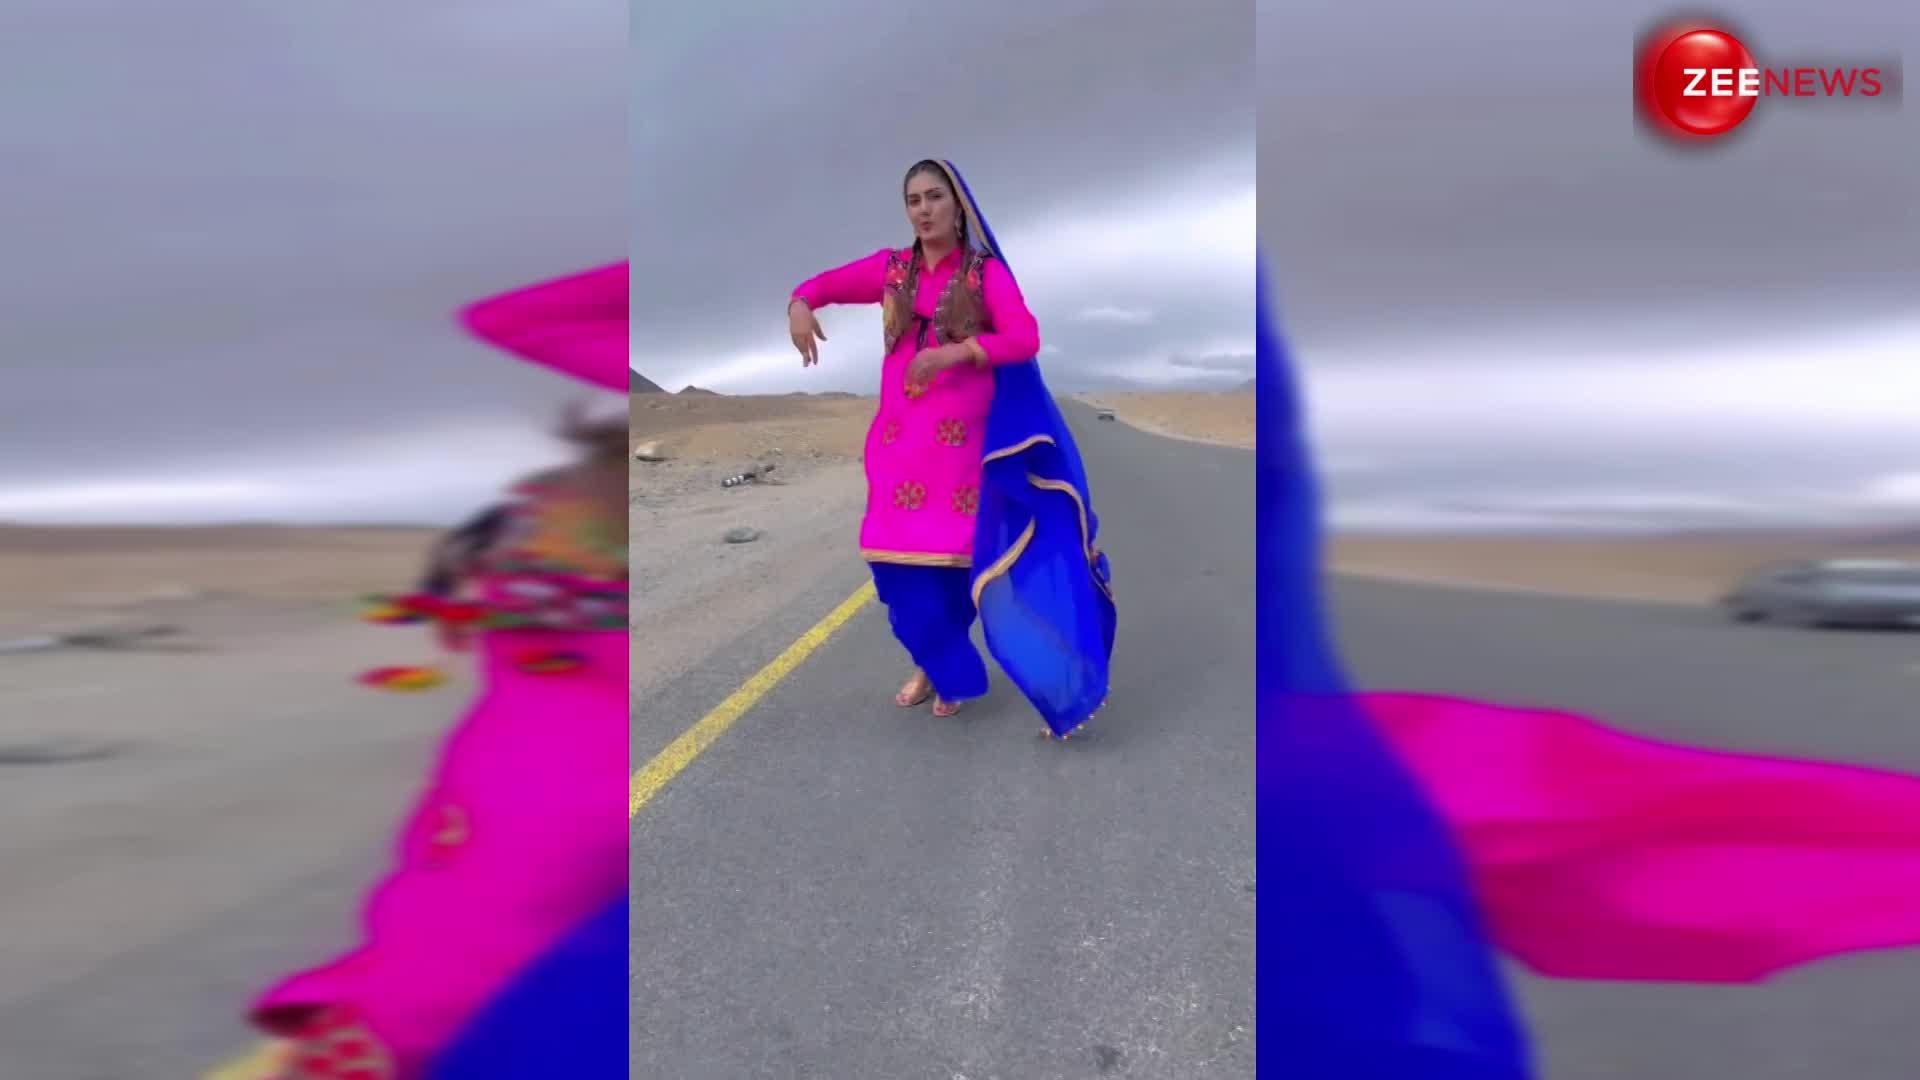 तेज हवाओं के बीच भी नहीं थमा Sapna Choudhary का डांस, सड़क के बीच खड़े होकर किया जबरदस्त डांस